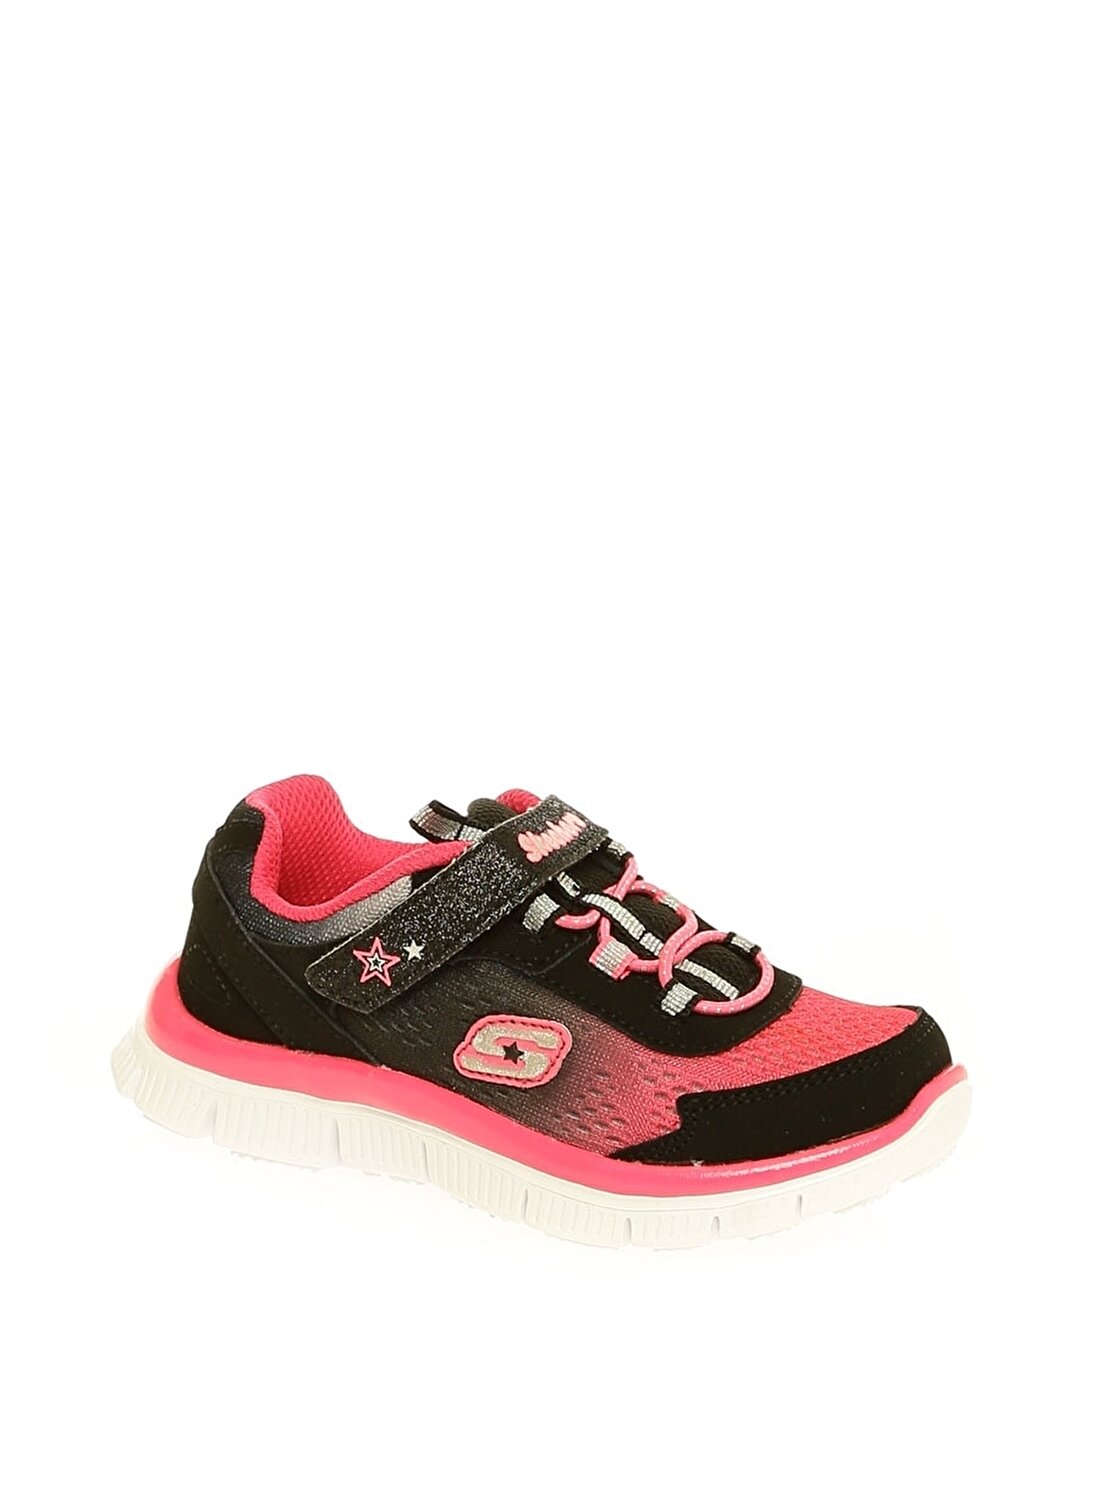 Skechers Siyah Kız Çocuk Yürüyüş Ayakkabısı